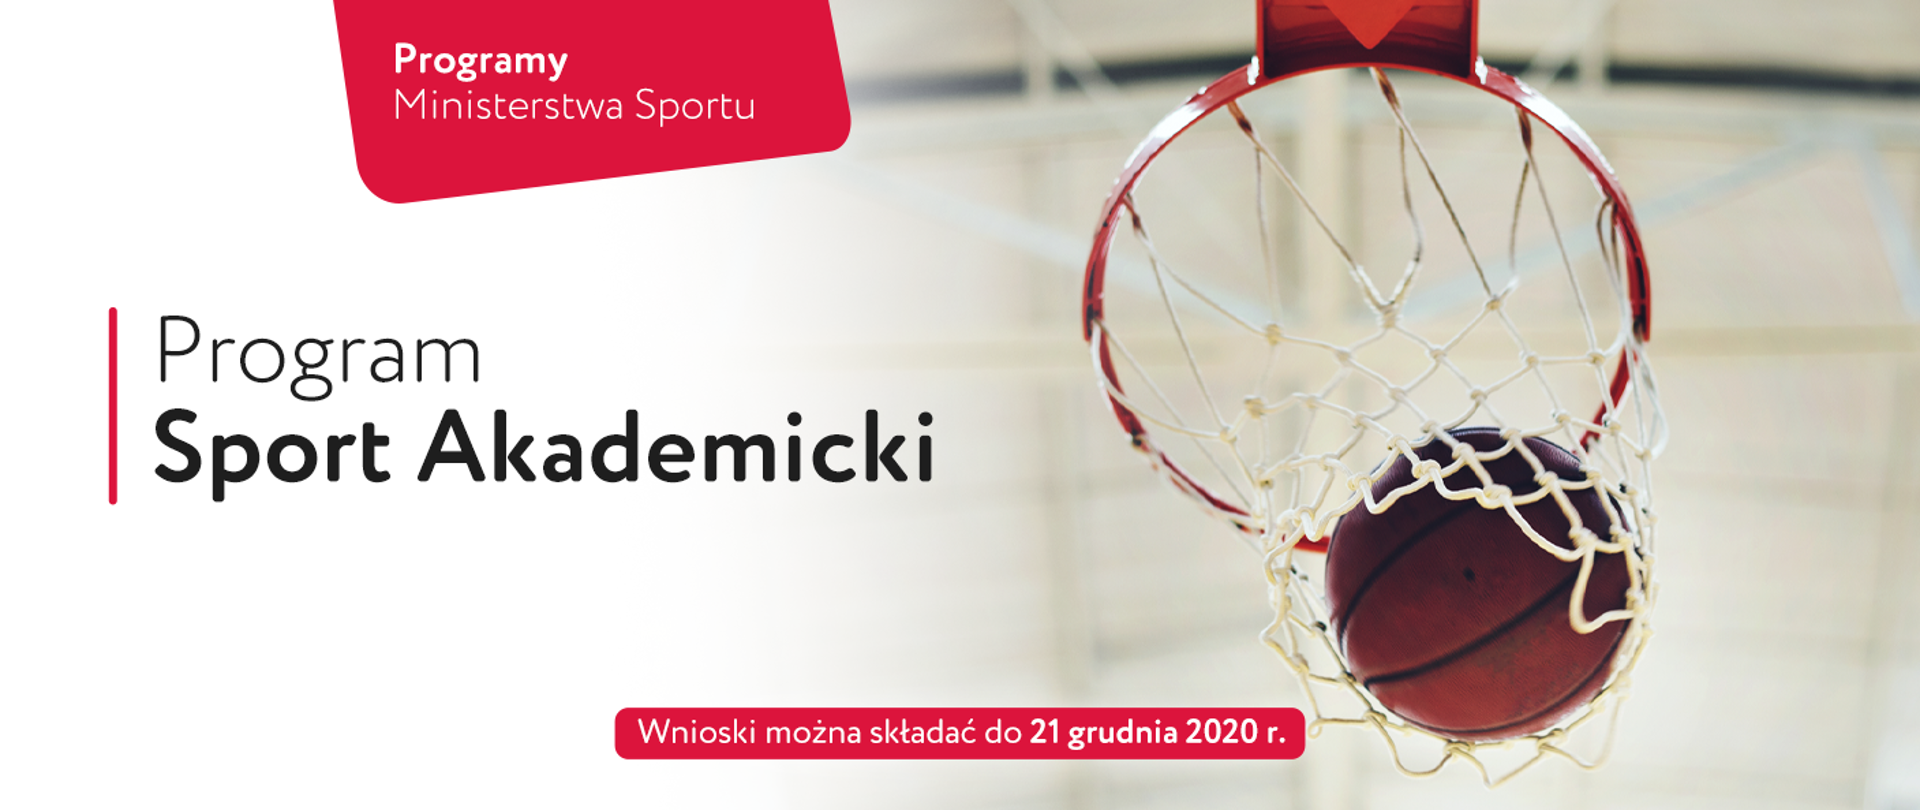 Programy Ministerstwa Sportu. Program Sport Akademicki. Wnioski można składać do 21 grudnia 2020 r. Po prawej piłka do koszykówki lądująca w obręczy.